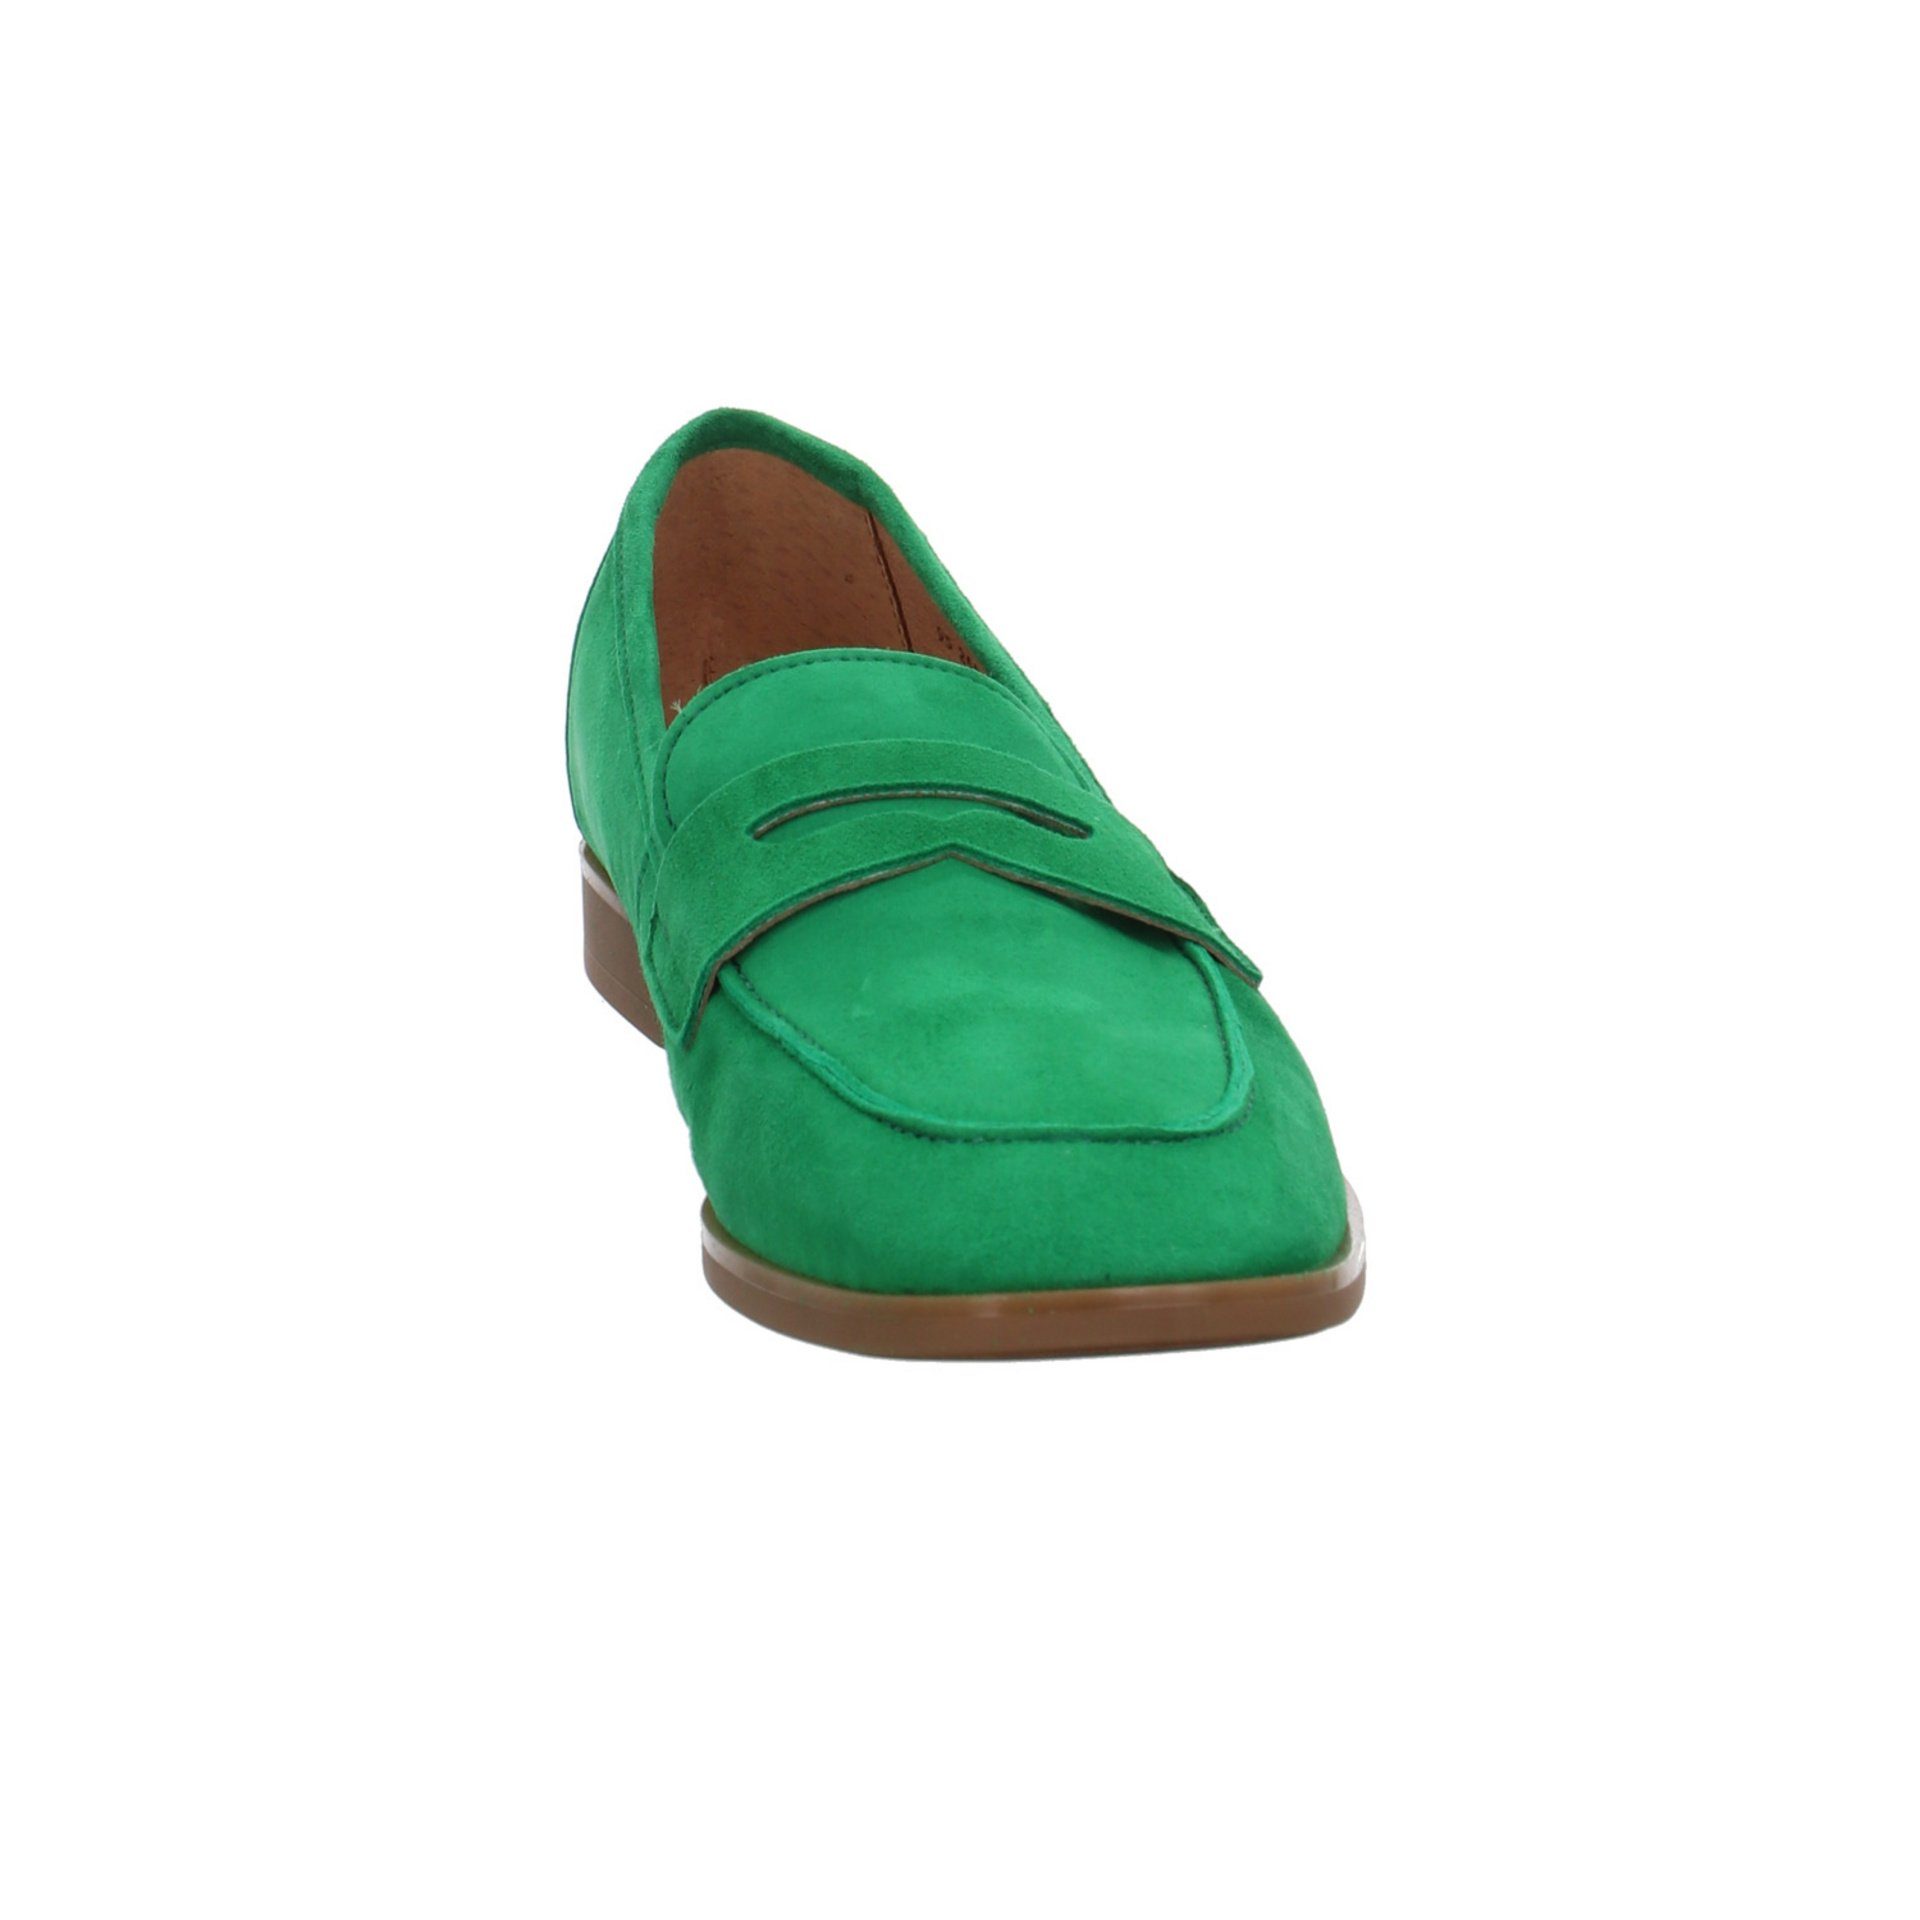 Schuhe Damen Gabor Slipper Slipper grün+petrol-mittel Glattleder Slipper